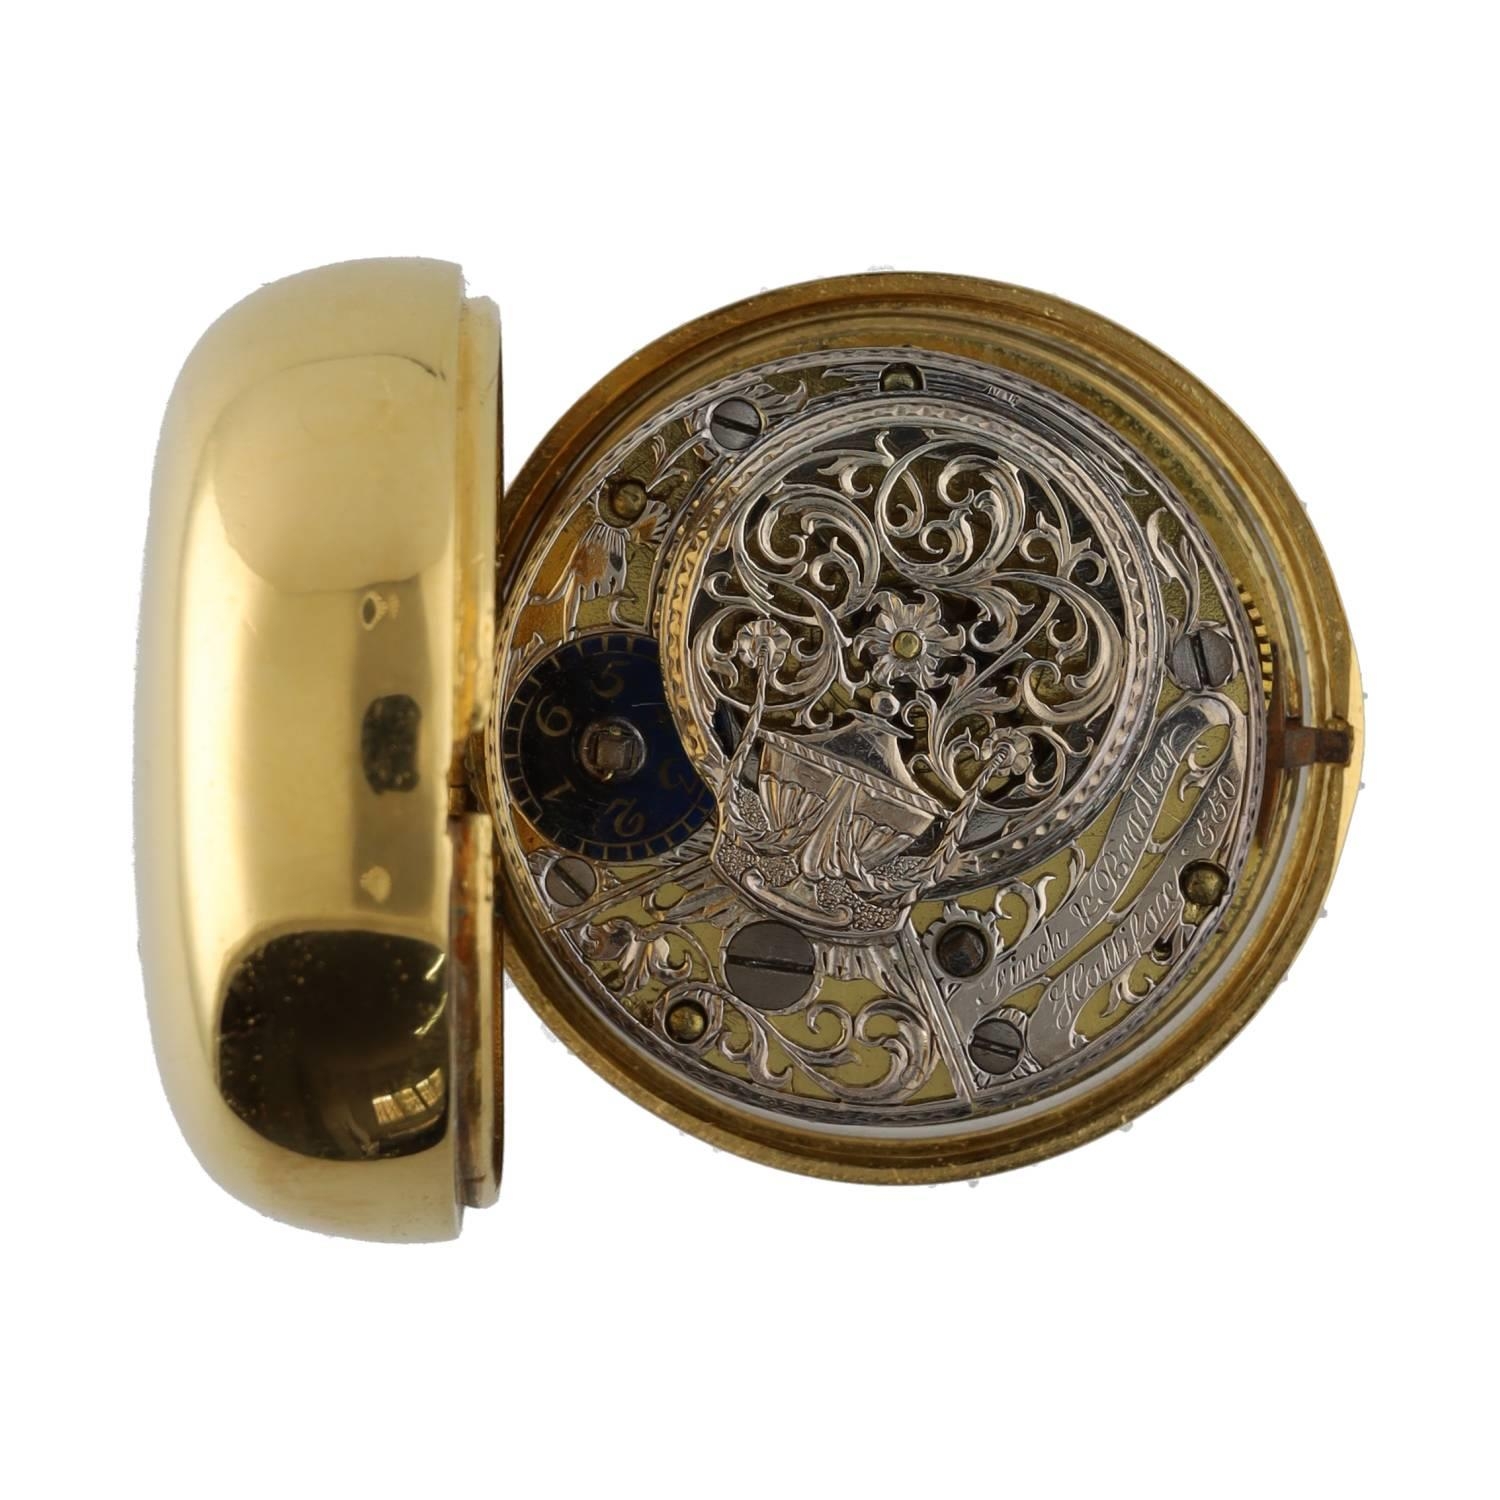 Finch & Bradley, Halifax - fine 18th century gilt pair cased verge pocket watch, the movement with - Bild 3 aus 6